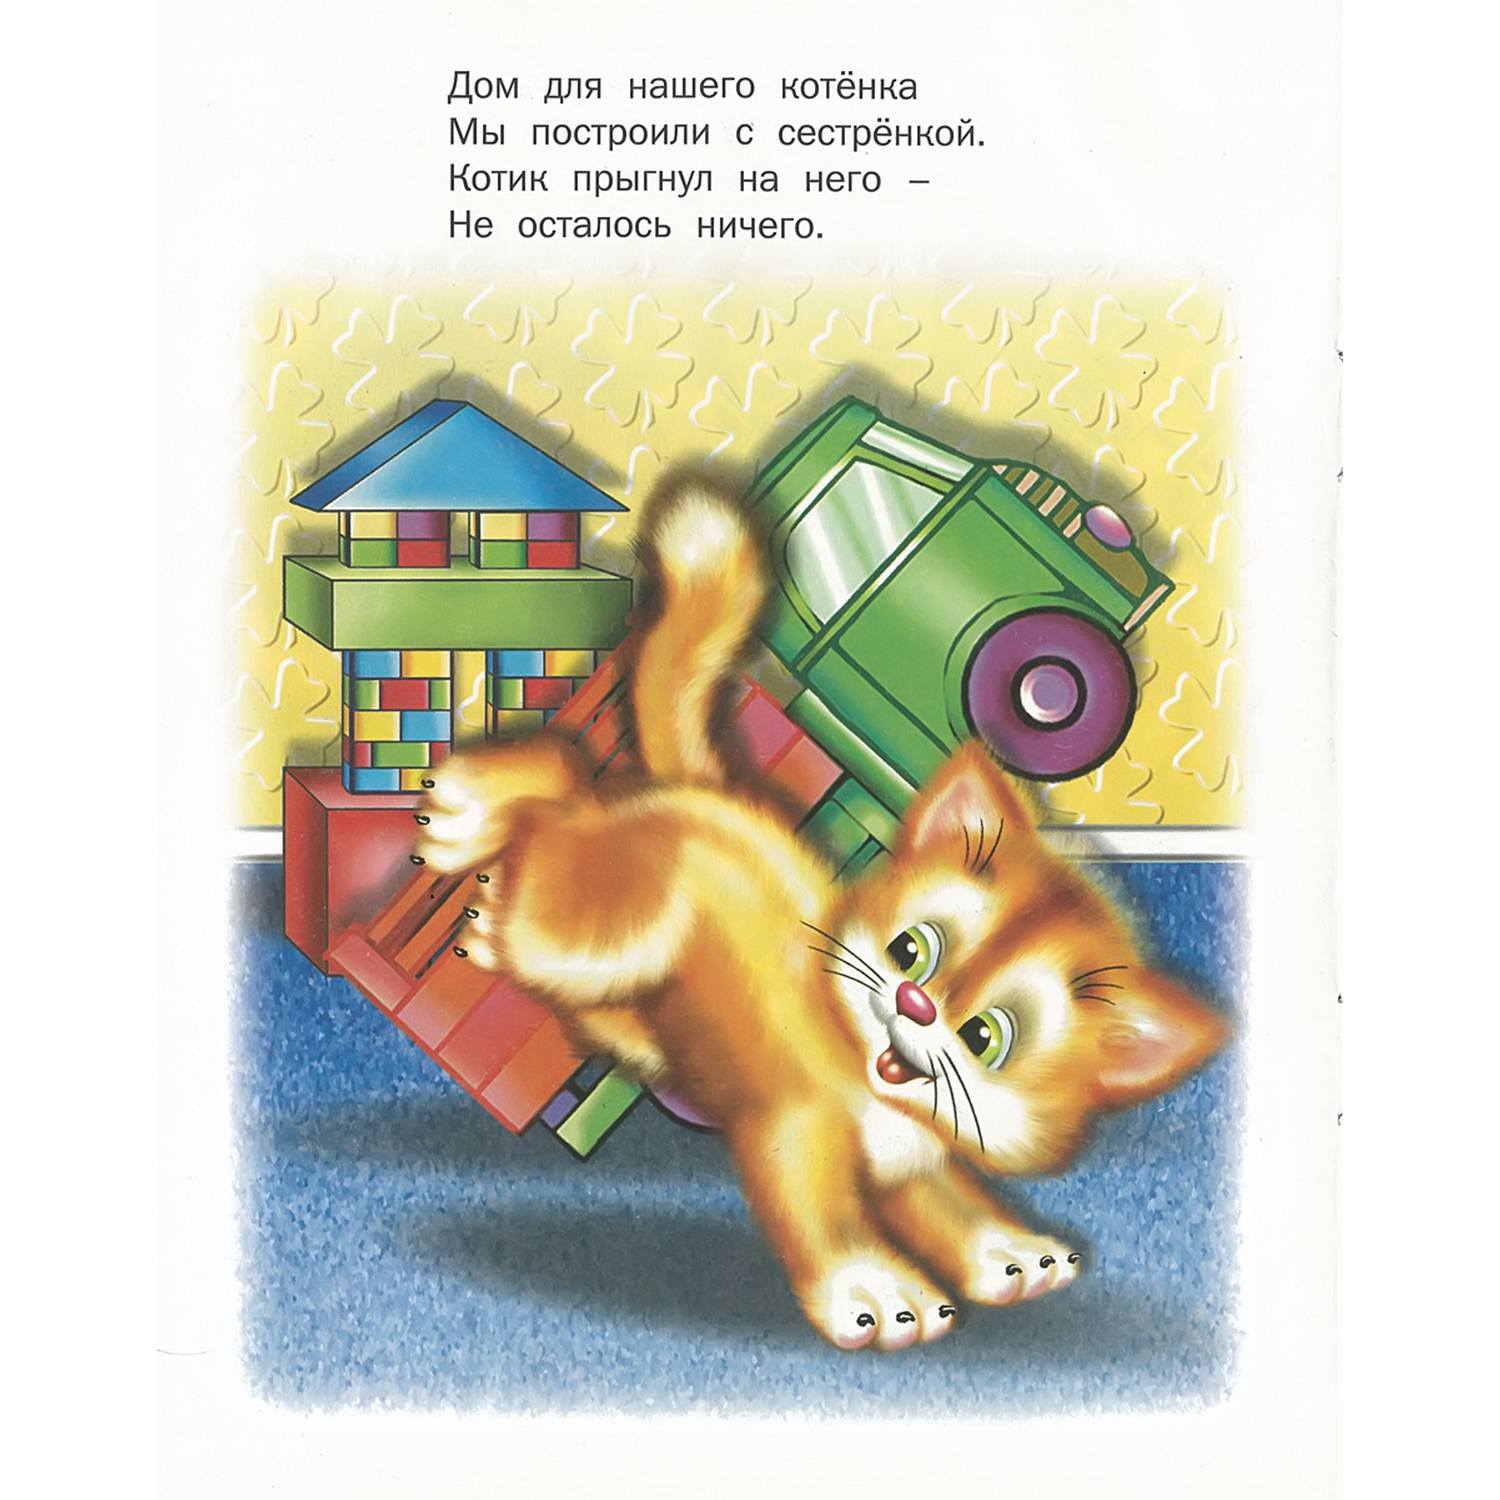 Набор книг Русич стихи и сказки для детей 6 шт - фото 9